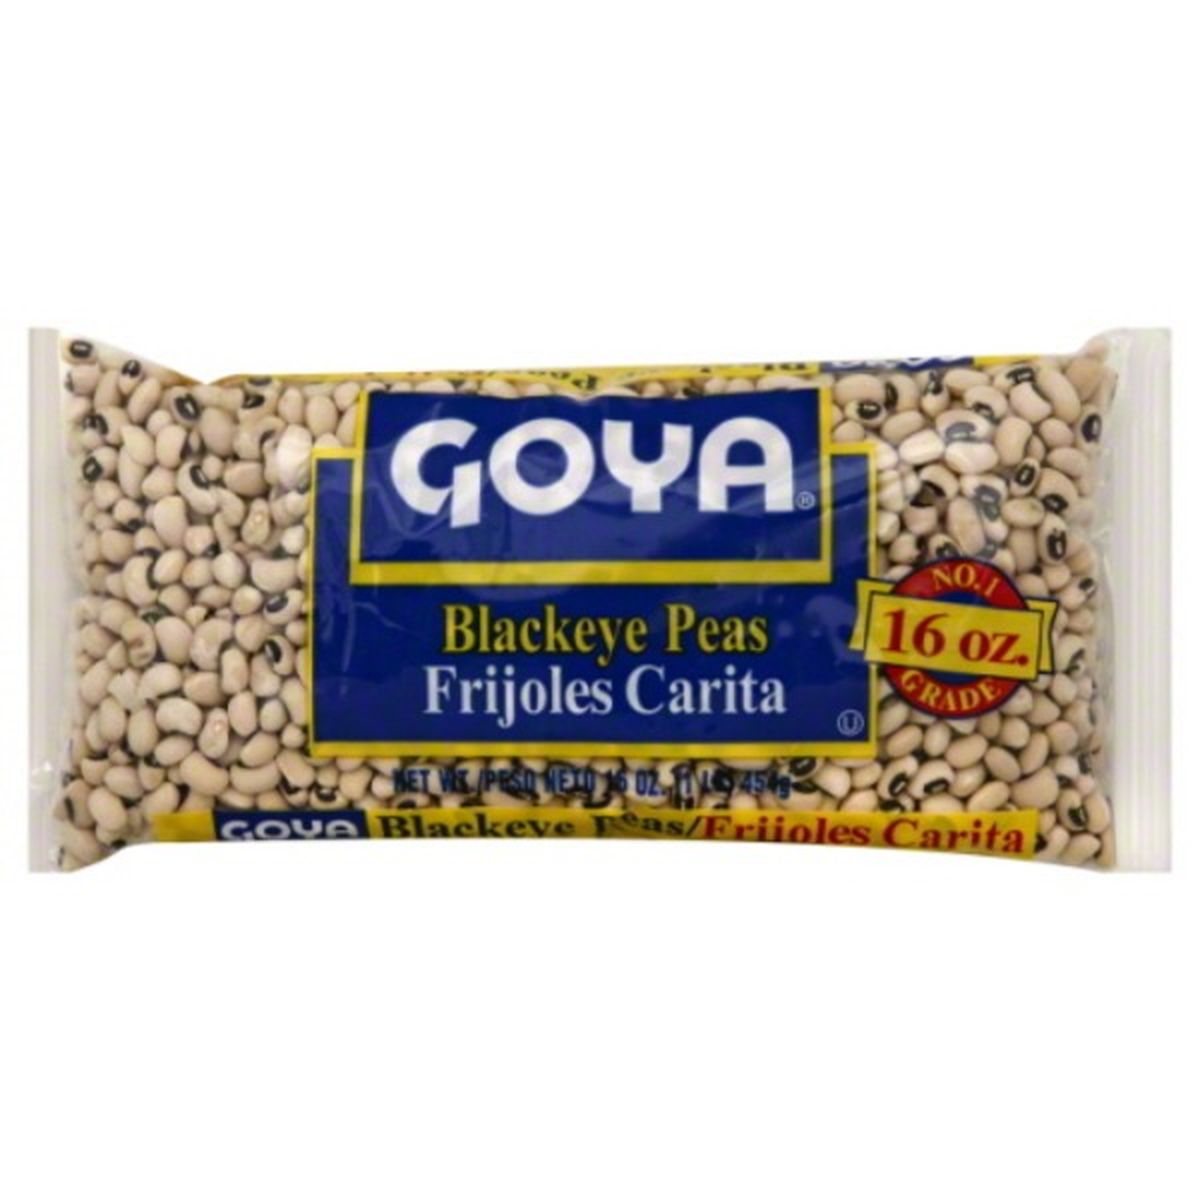 Calories in Goya Blackeye Peas